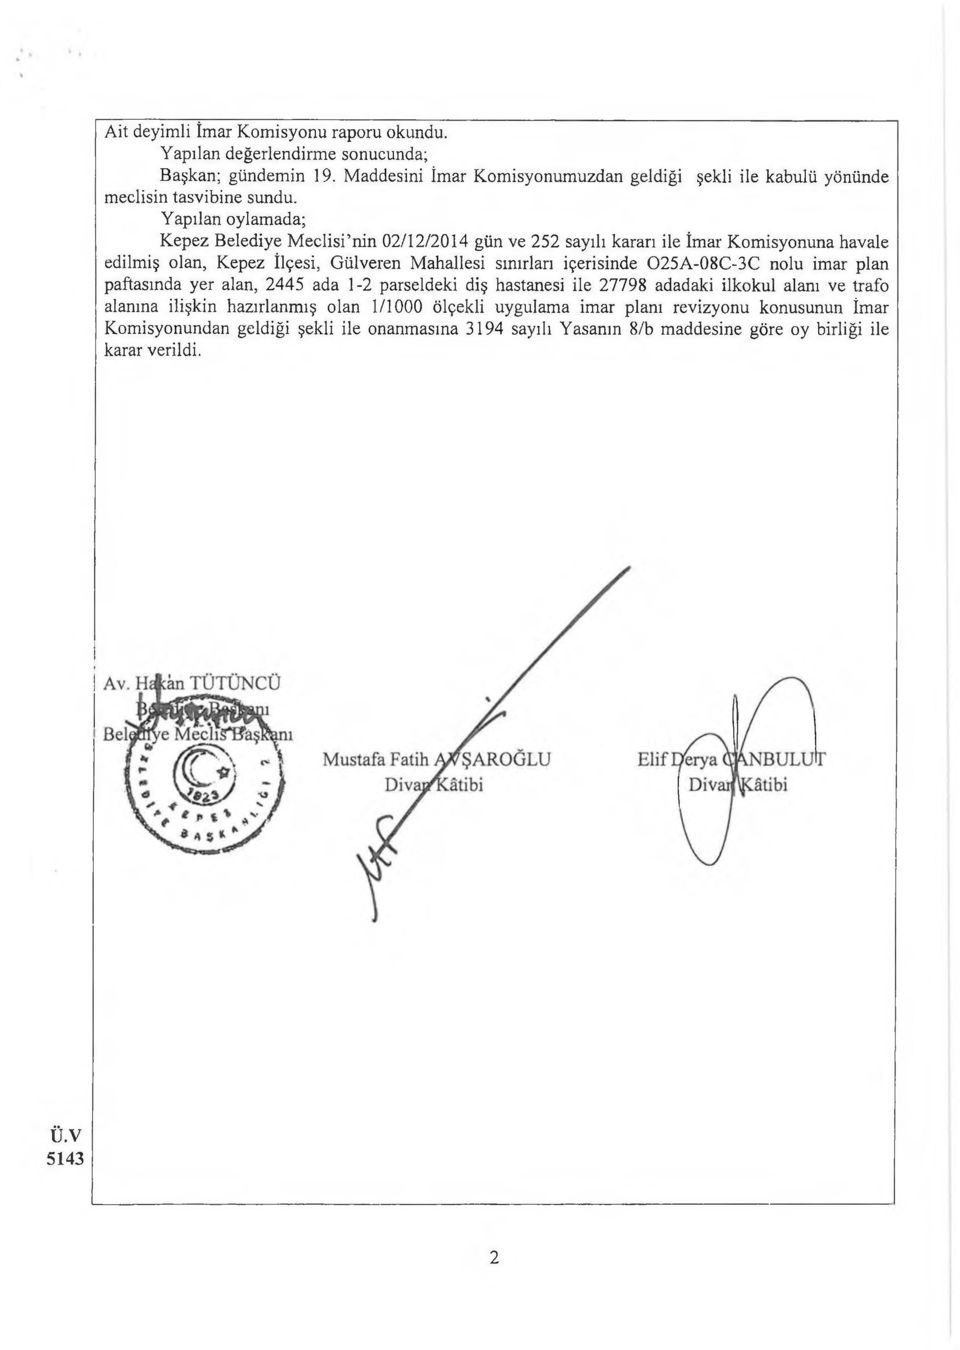 Yapılan oylamada; Kepez Belediye Meclisi nin 02/12/2014 gün ve 252 sayılı kararı ile İmar Komisyonuna havale edilmiş olan, Kepez İlçesi, Gülveren Mahallesi sınırları içerisinde